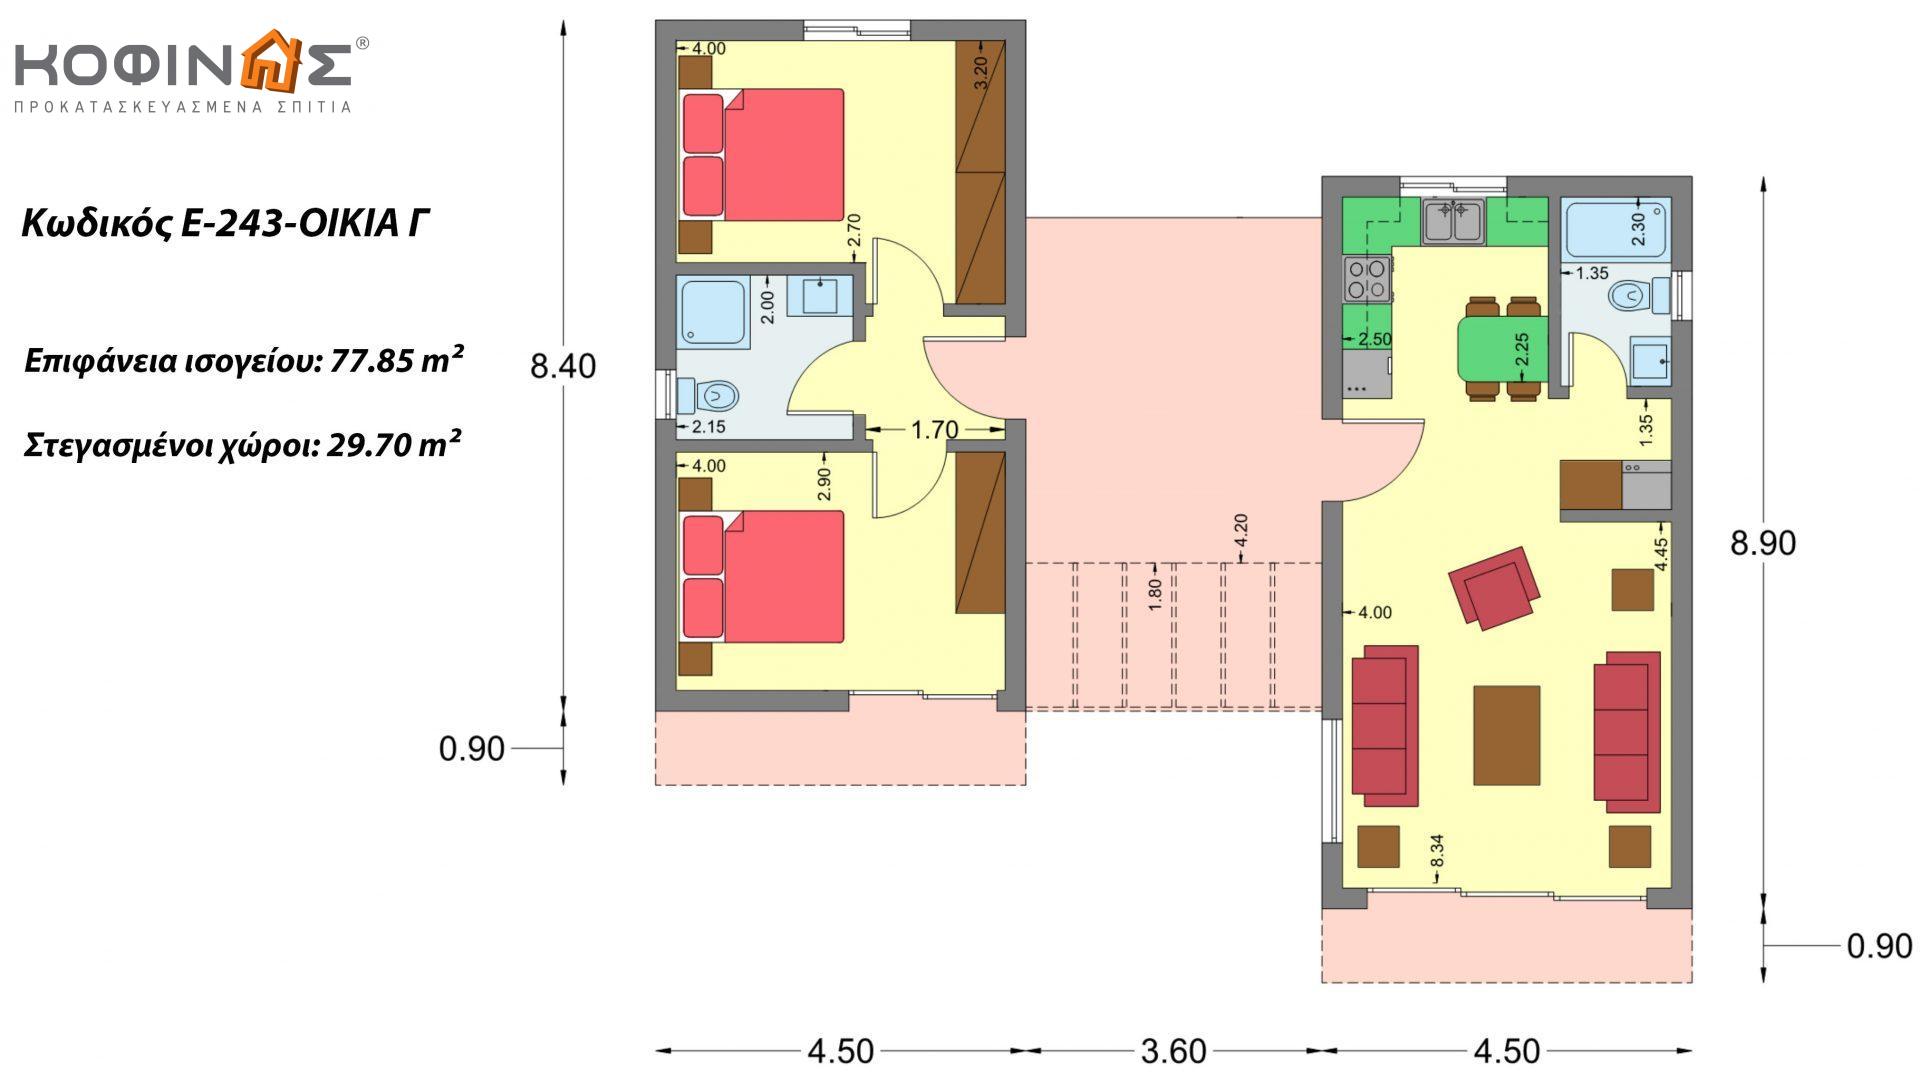 Συγκρότημα Κατοικιών E-243, συνολικής επιφάνειας (90.42+75.56+77.85)= 243,83 τ.μ., συνολική επιφάνεια στεγασμένων χώρων 88,00 τ.μ., μπαλκόνια(οικία Α) 32.54 τ.μ.